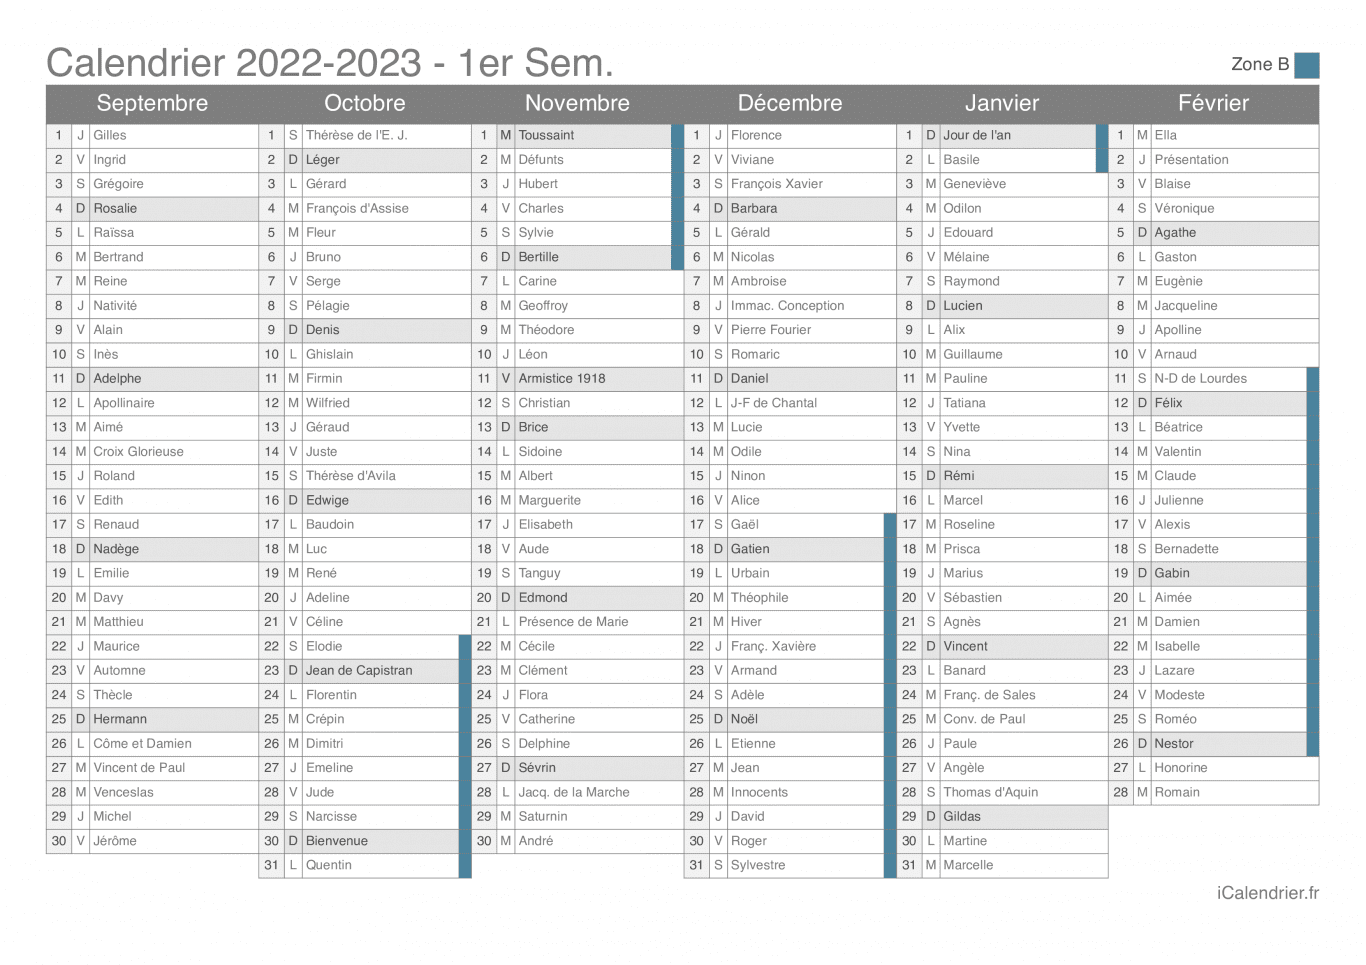 Calendrier des vacances scolaires 2022-2023 par semestre, zone B, avec fête du jour